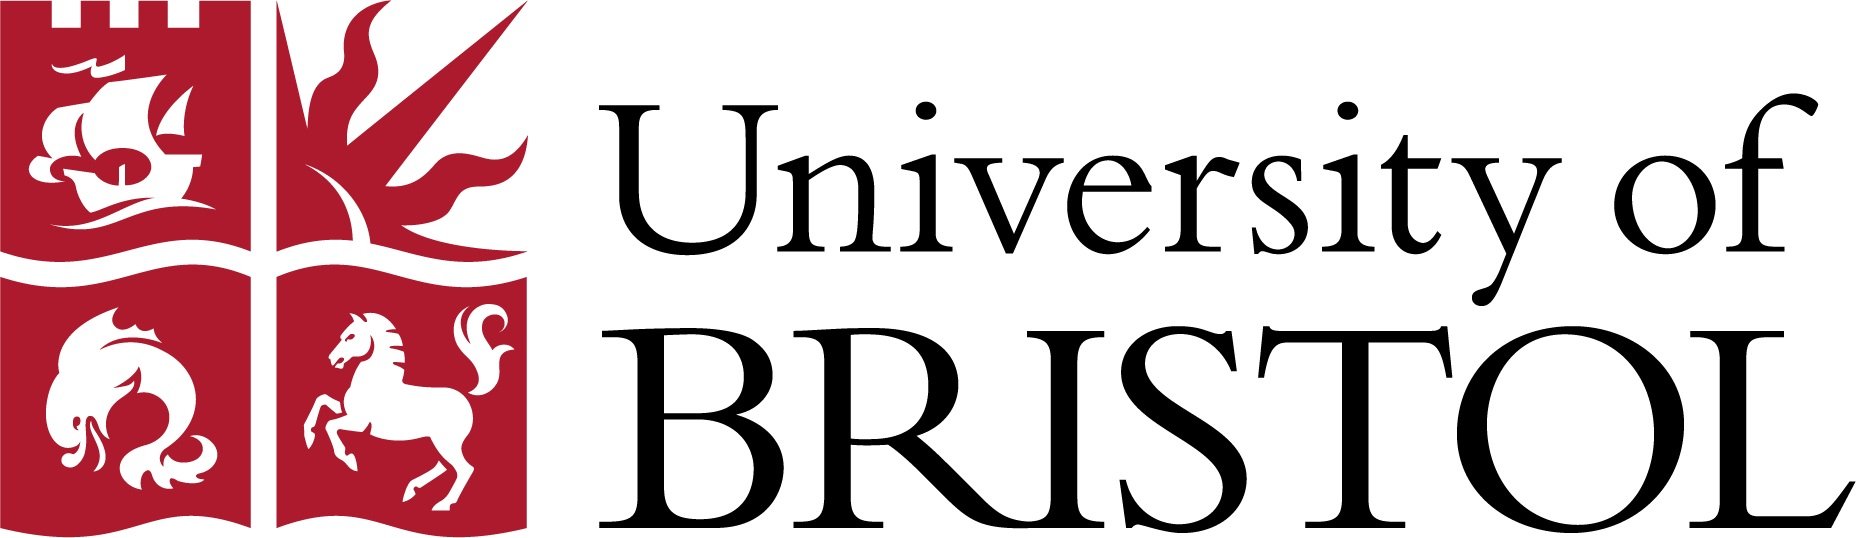 University+of+Bristol+Logo+Vector.jpg